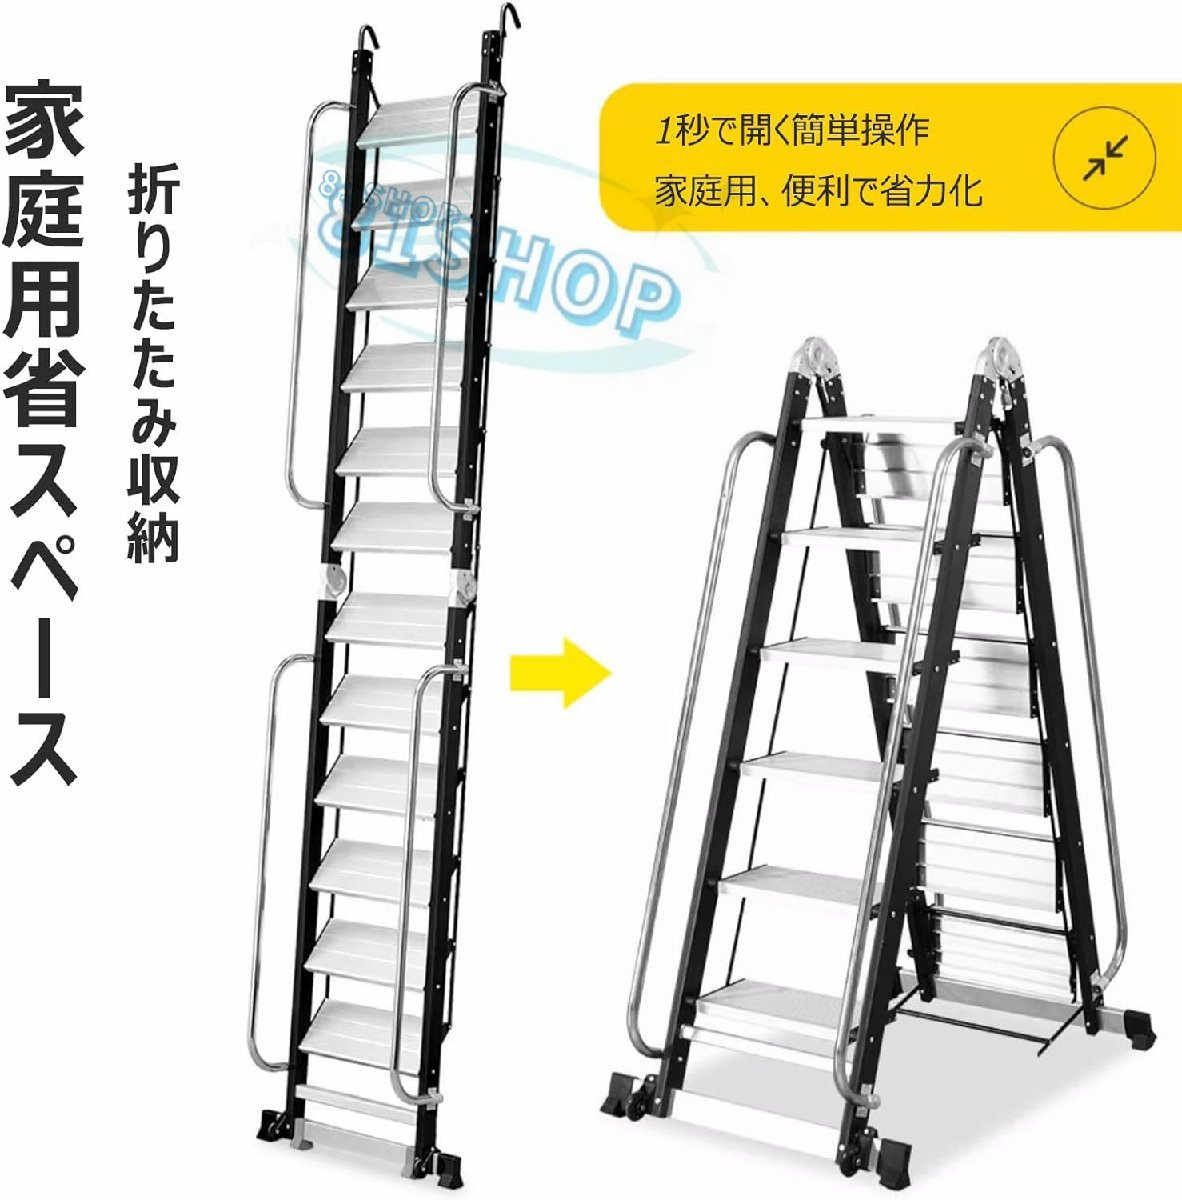 [81SHOP] крыша обратная сторона лестница aluminium сплав loft лестница лестница поручень имеется для бытового использования складной лестница легкий многофункциональный безопасность фиксация крюк широкий. педаль 10 уровень 